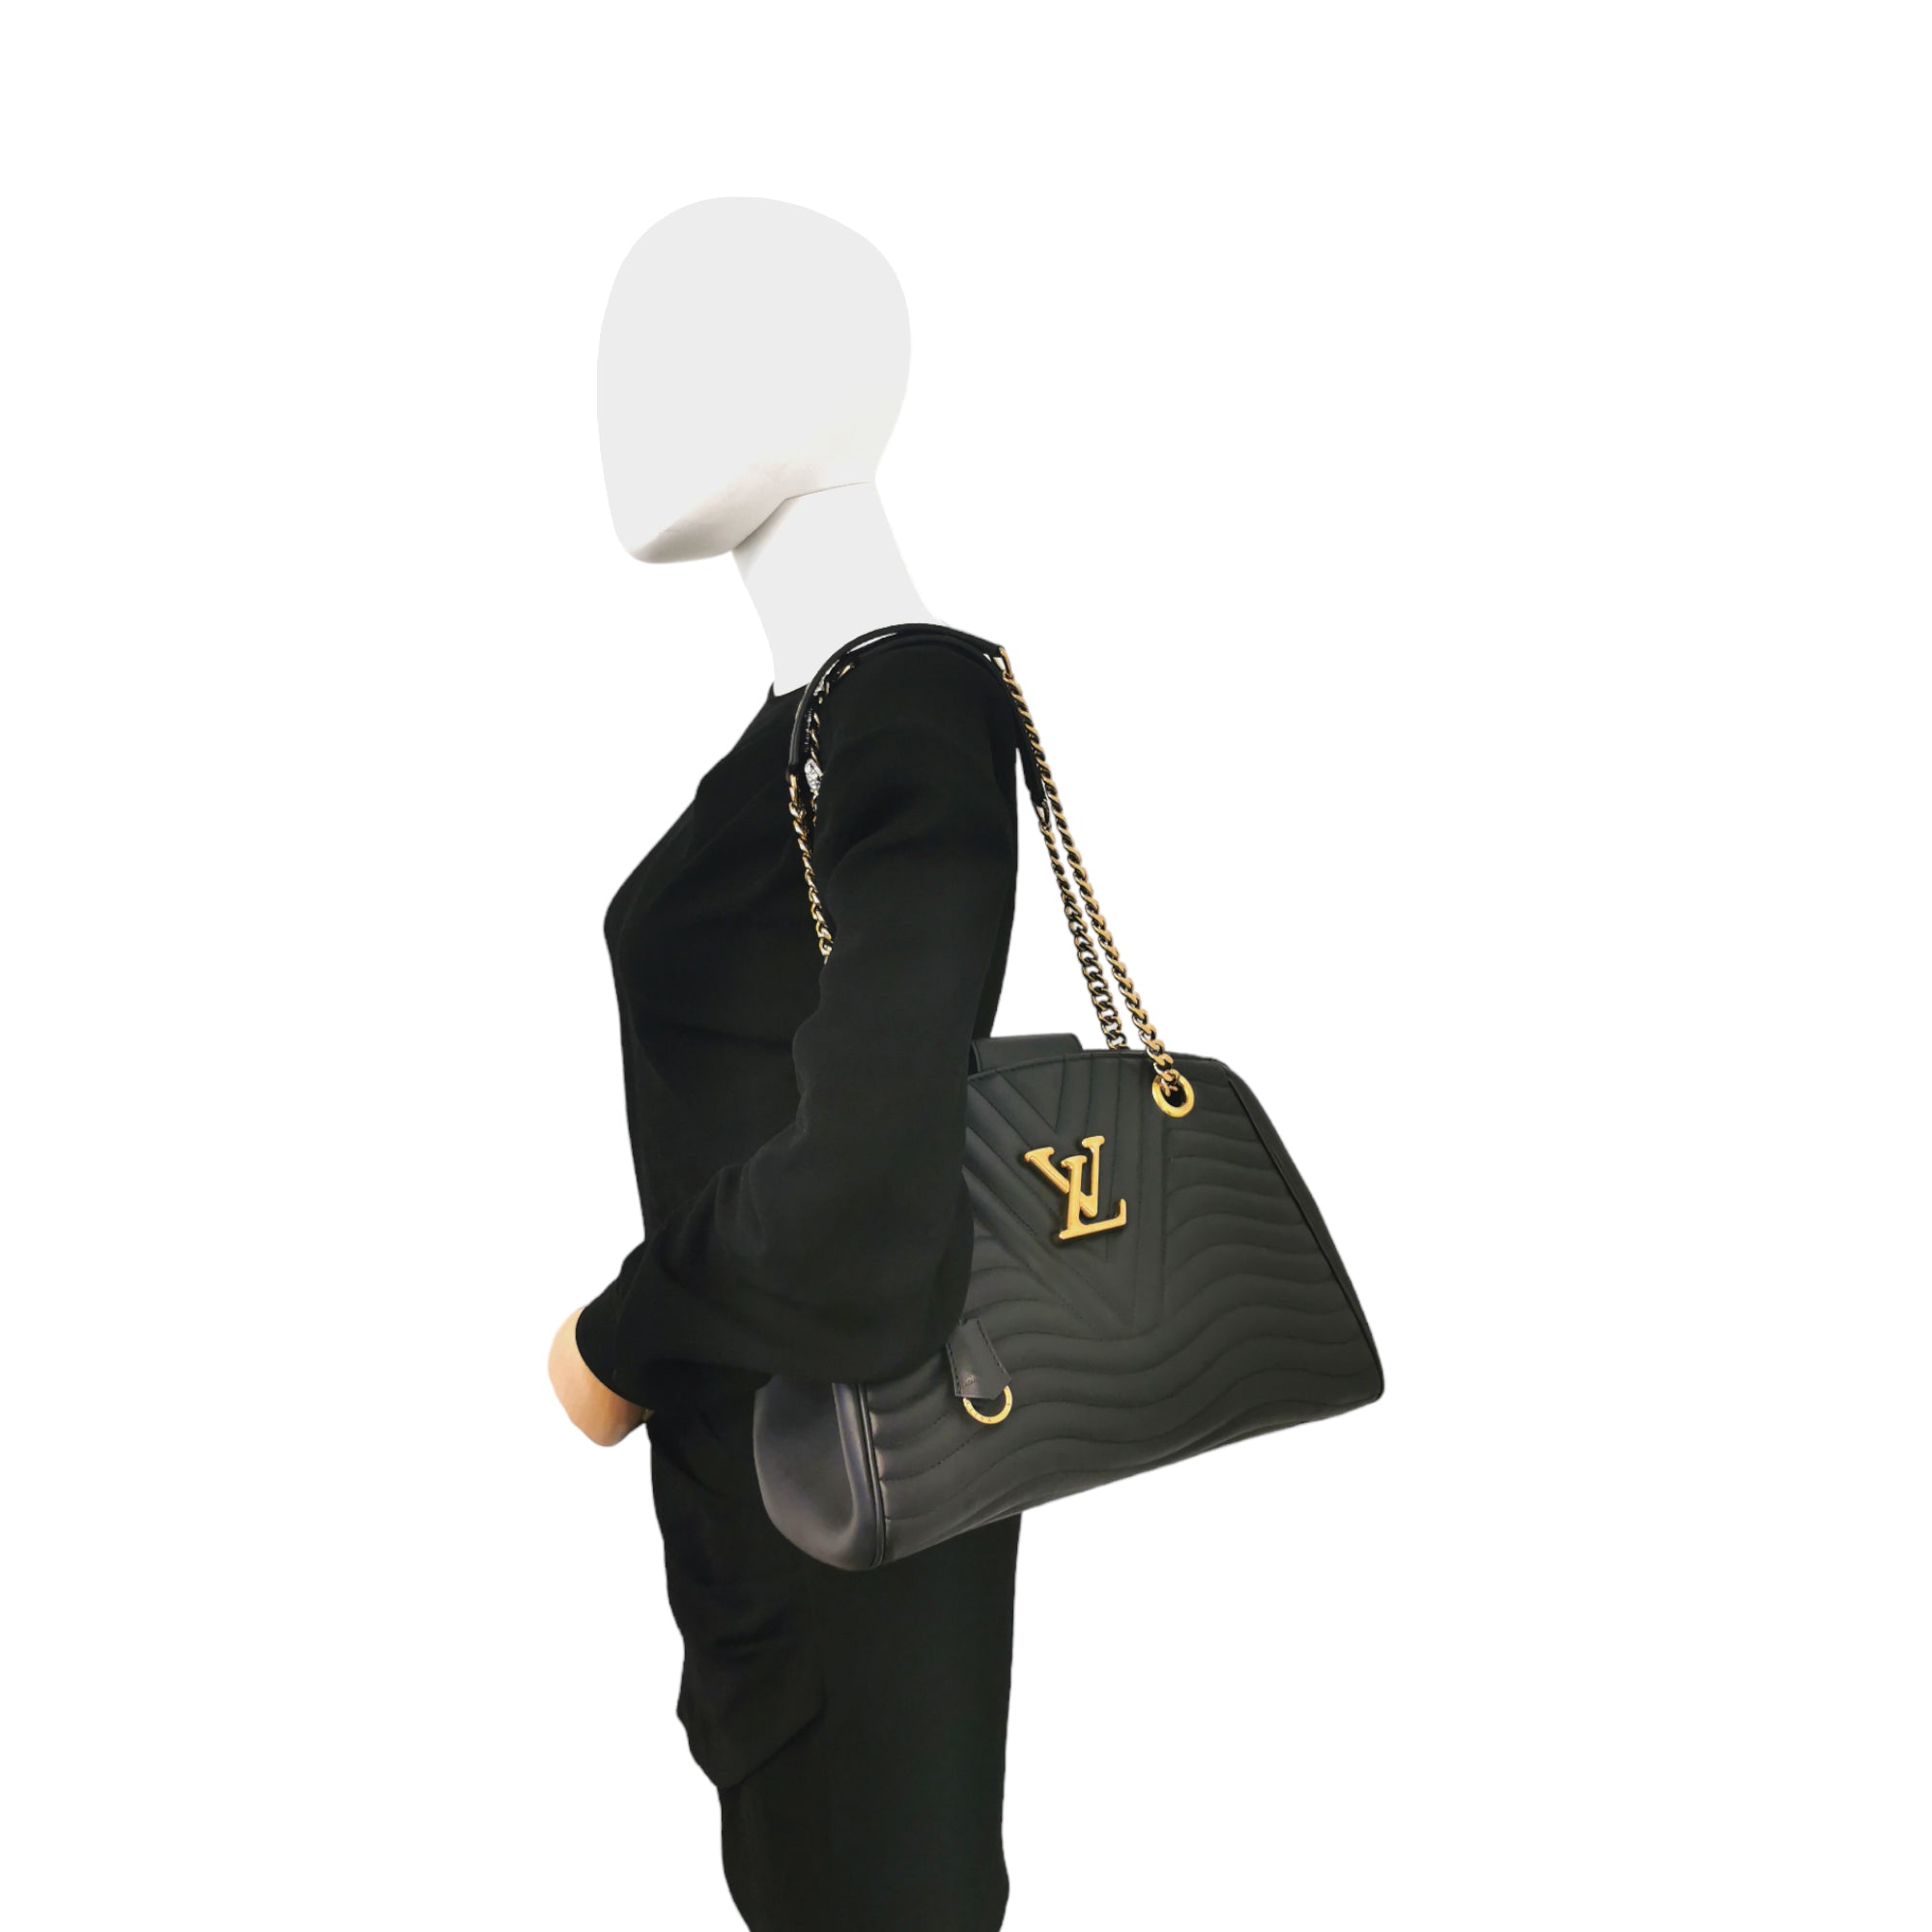 Borsa Tote donna Louis Vuitton New Wave nera pelle con catena dorata